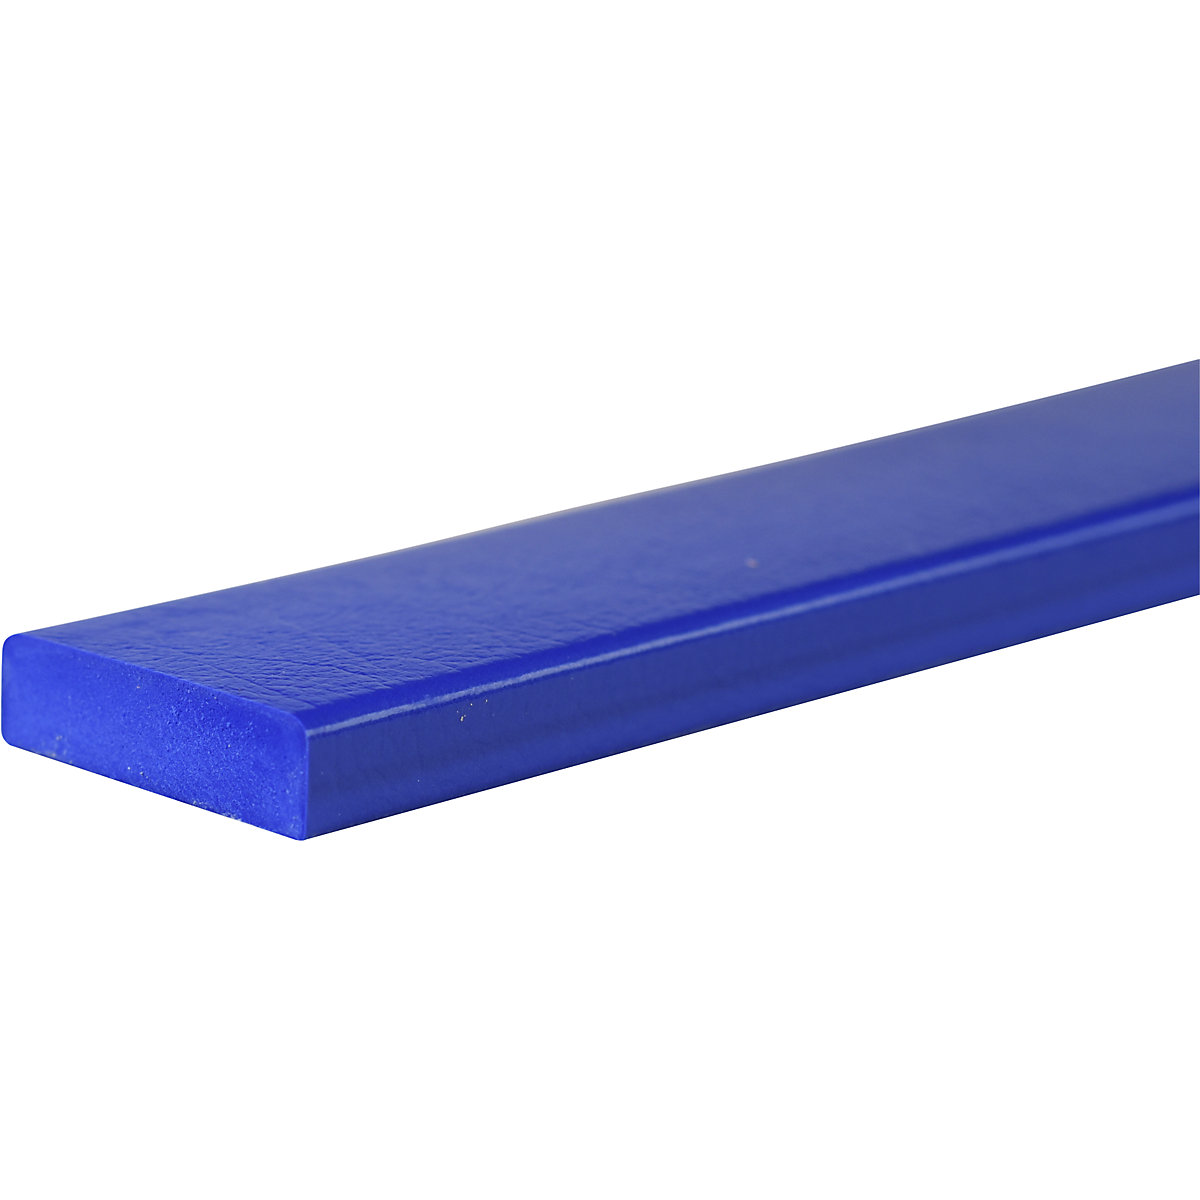 Zabezpieczenie powierzchni Knuffi® – SHG, typ S, szt. 1 m, niebieski-26